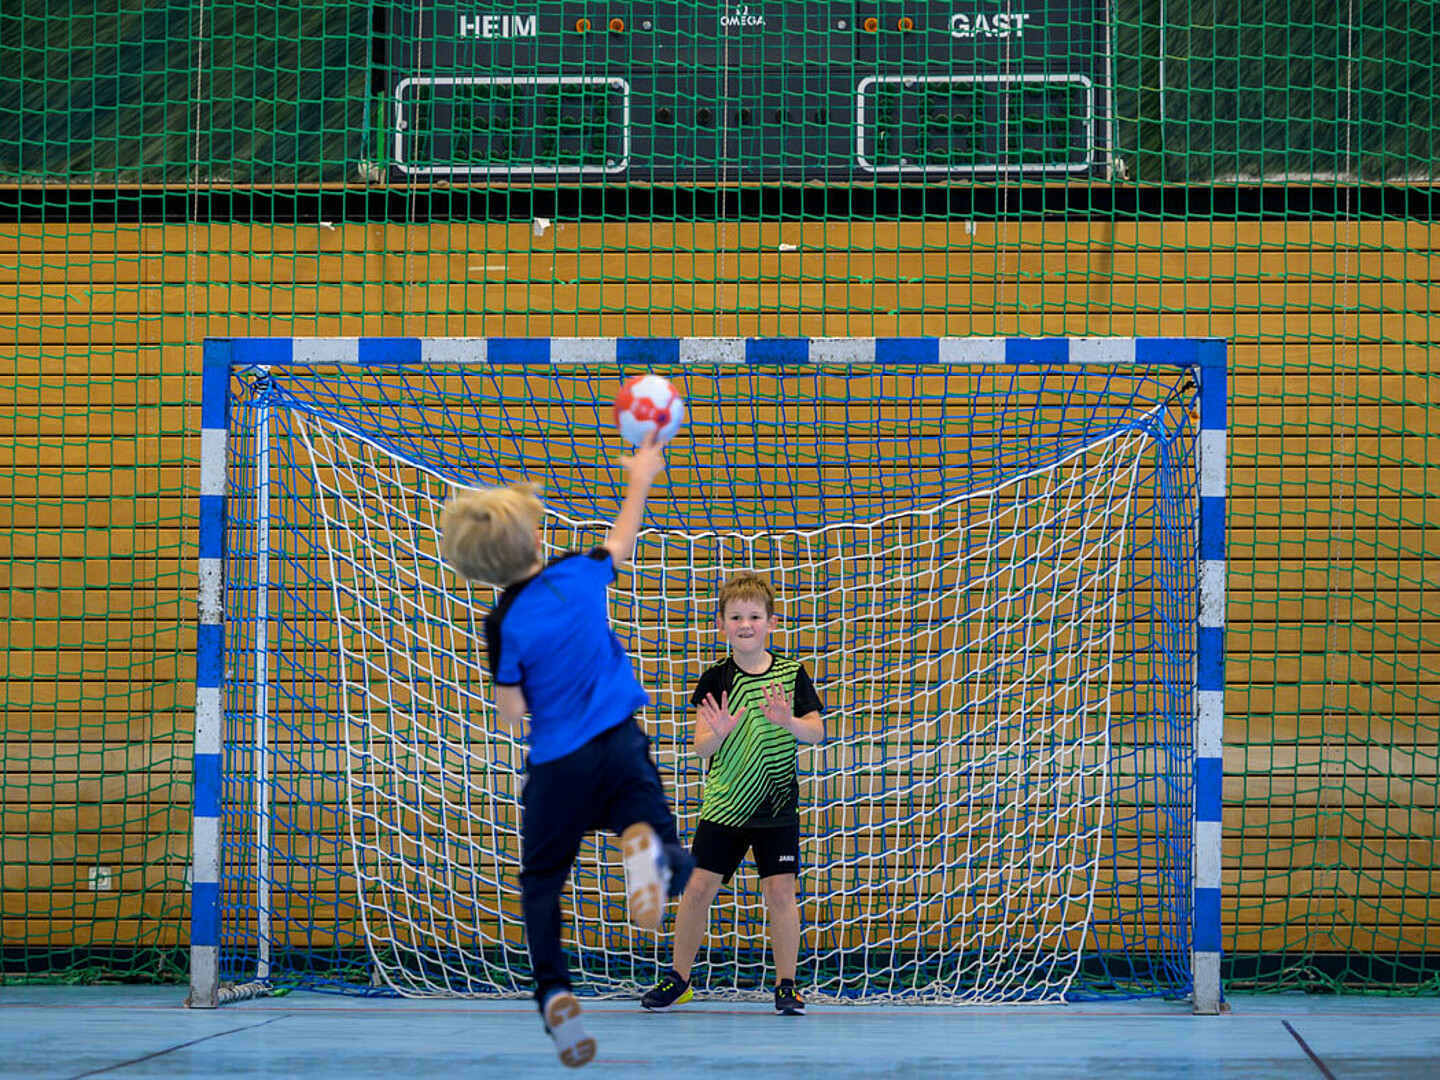 Ein Junge in Blau wirft den Ball auf das Tor und der Torwartjunge hebt seine Hand, um den Ball zu blockieren.